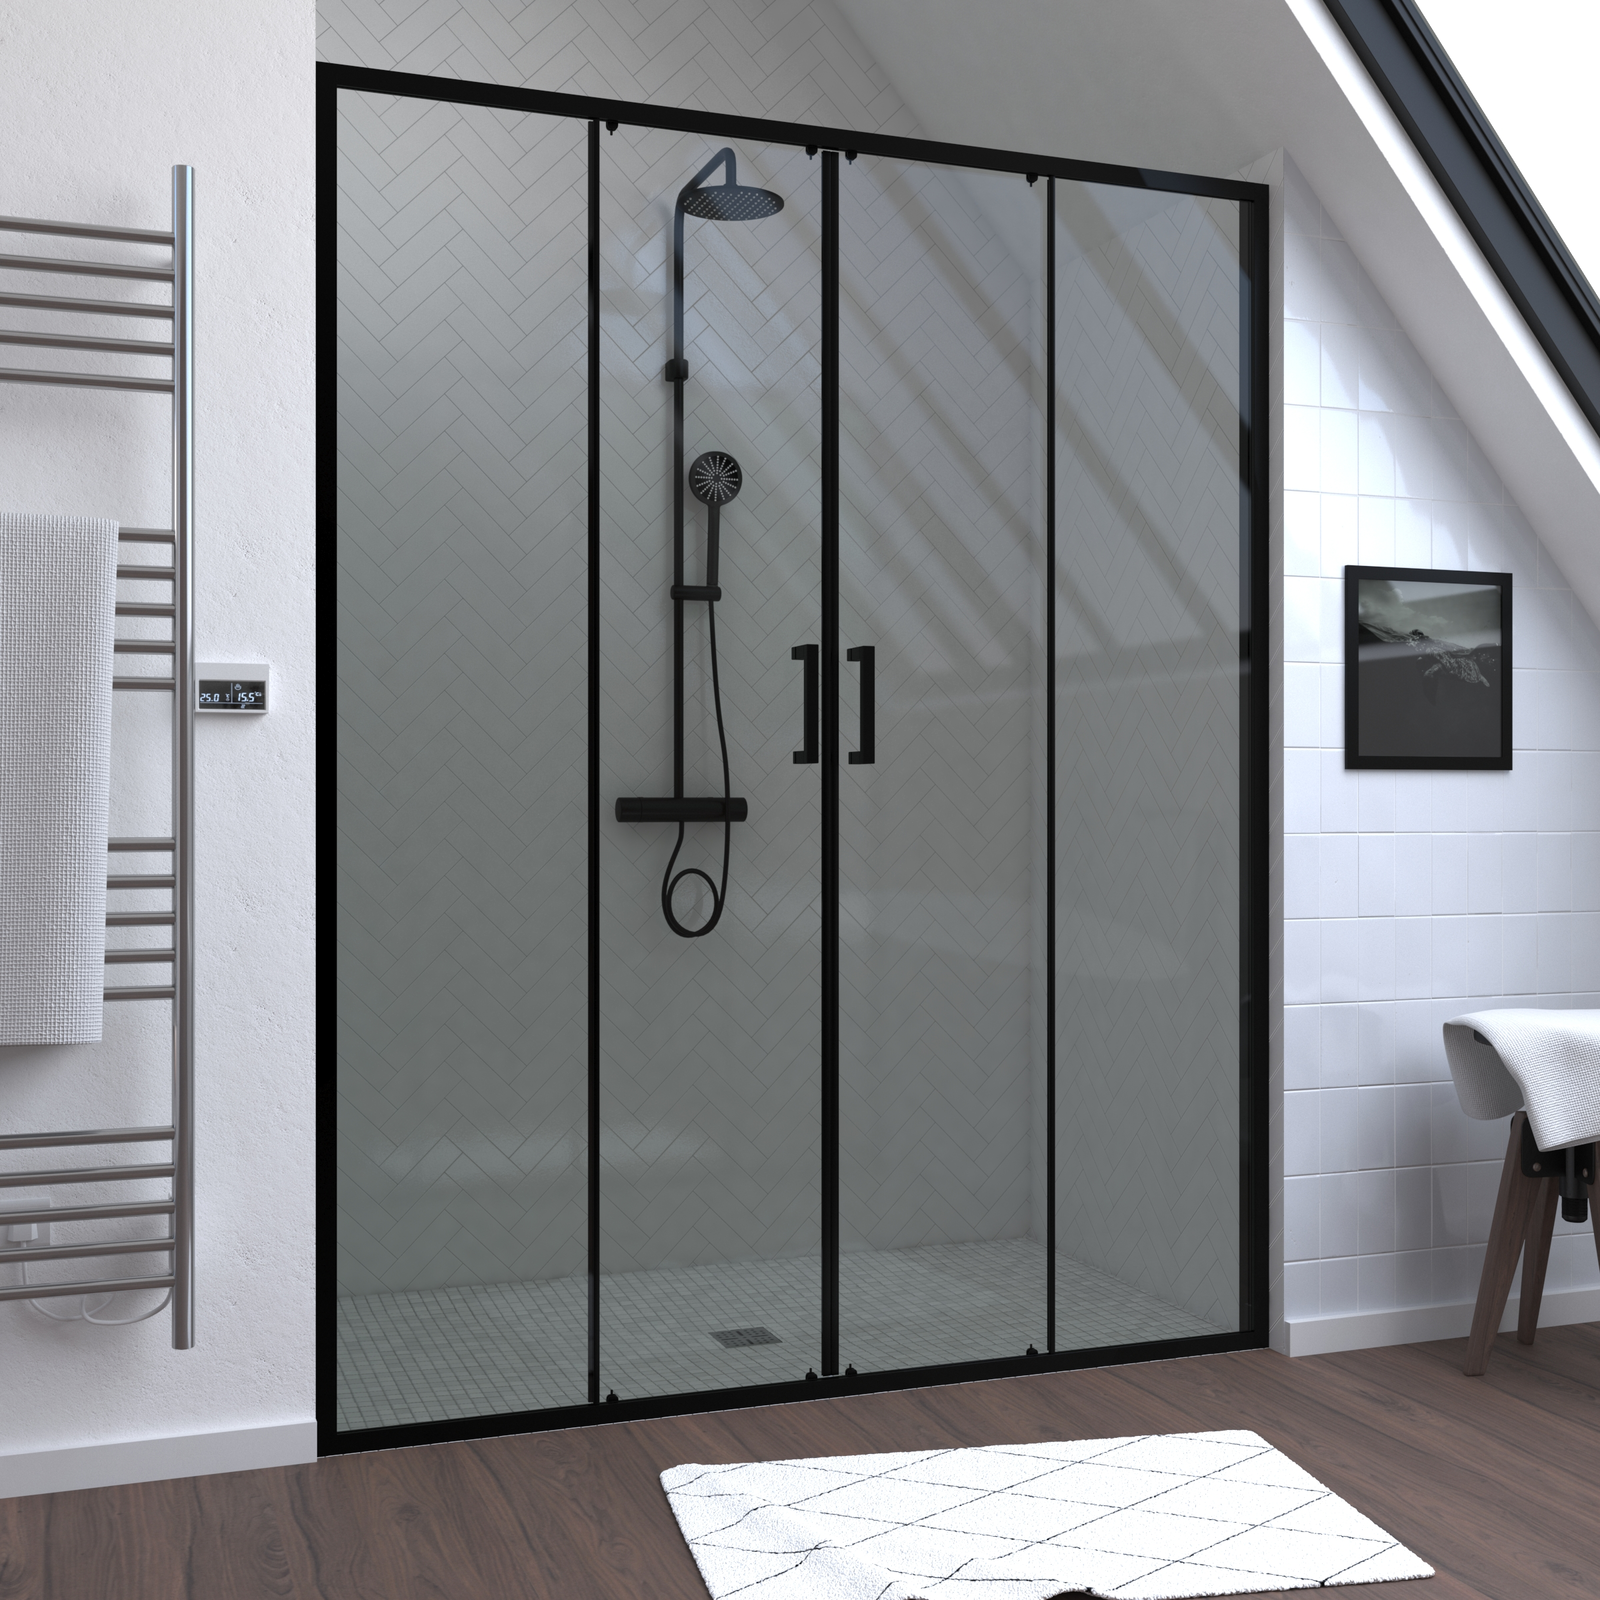 Paroi de douche 2 portes coulissantes 160x200 cm - Verre transparent - Profilé Noir - CRUSH